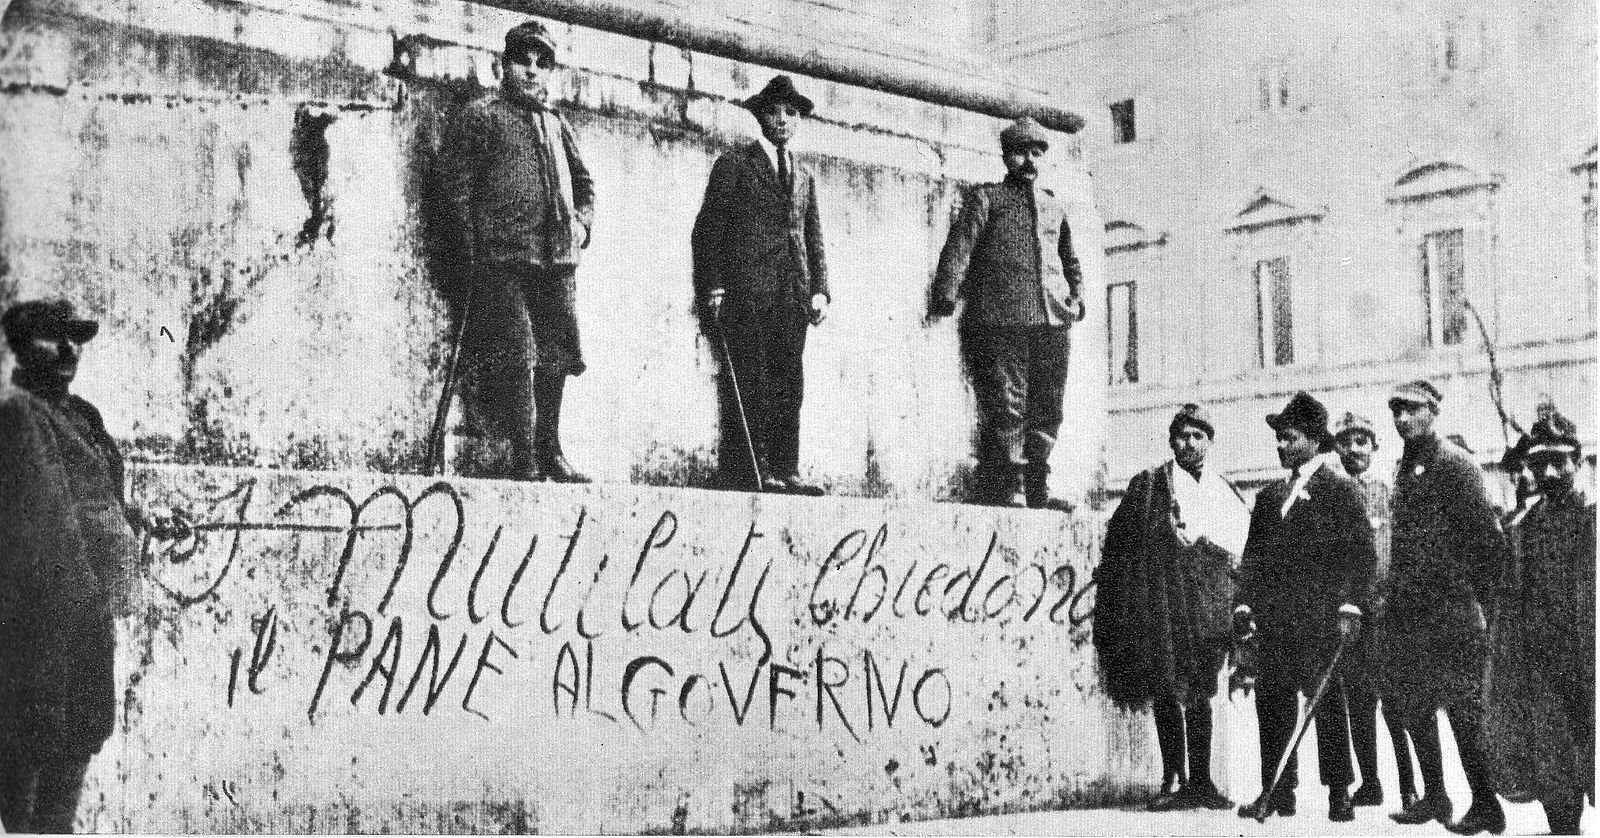 "I mutilati chiedono il pane al Governo" Storia del Fascismo di Enzo Biagi. 1919-1920